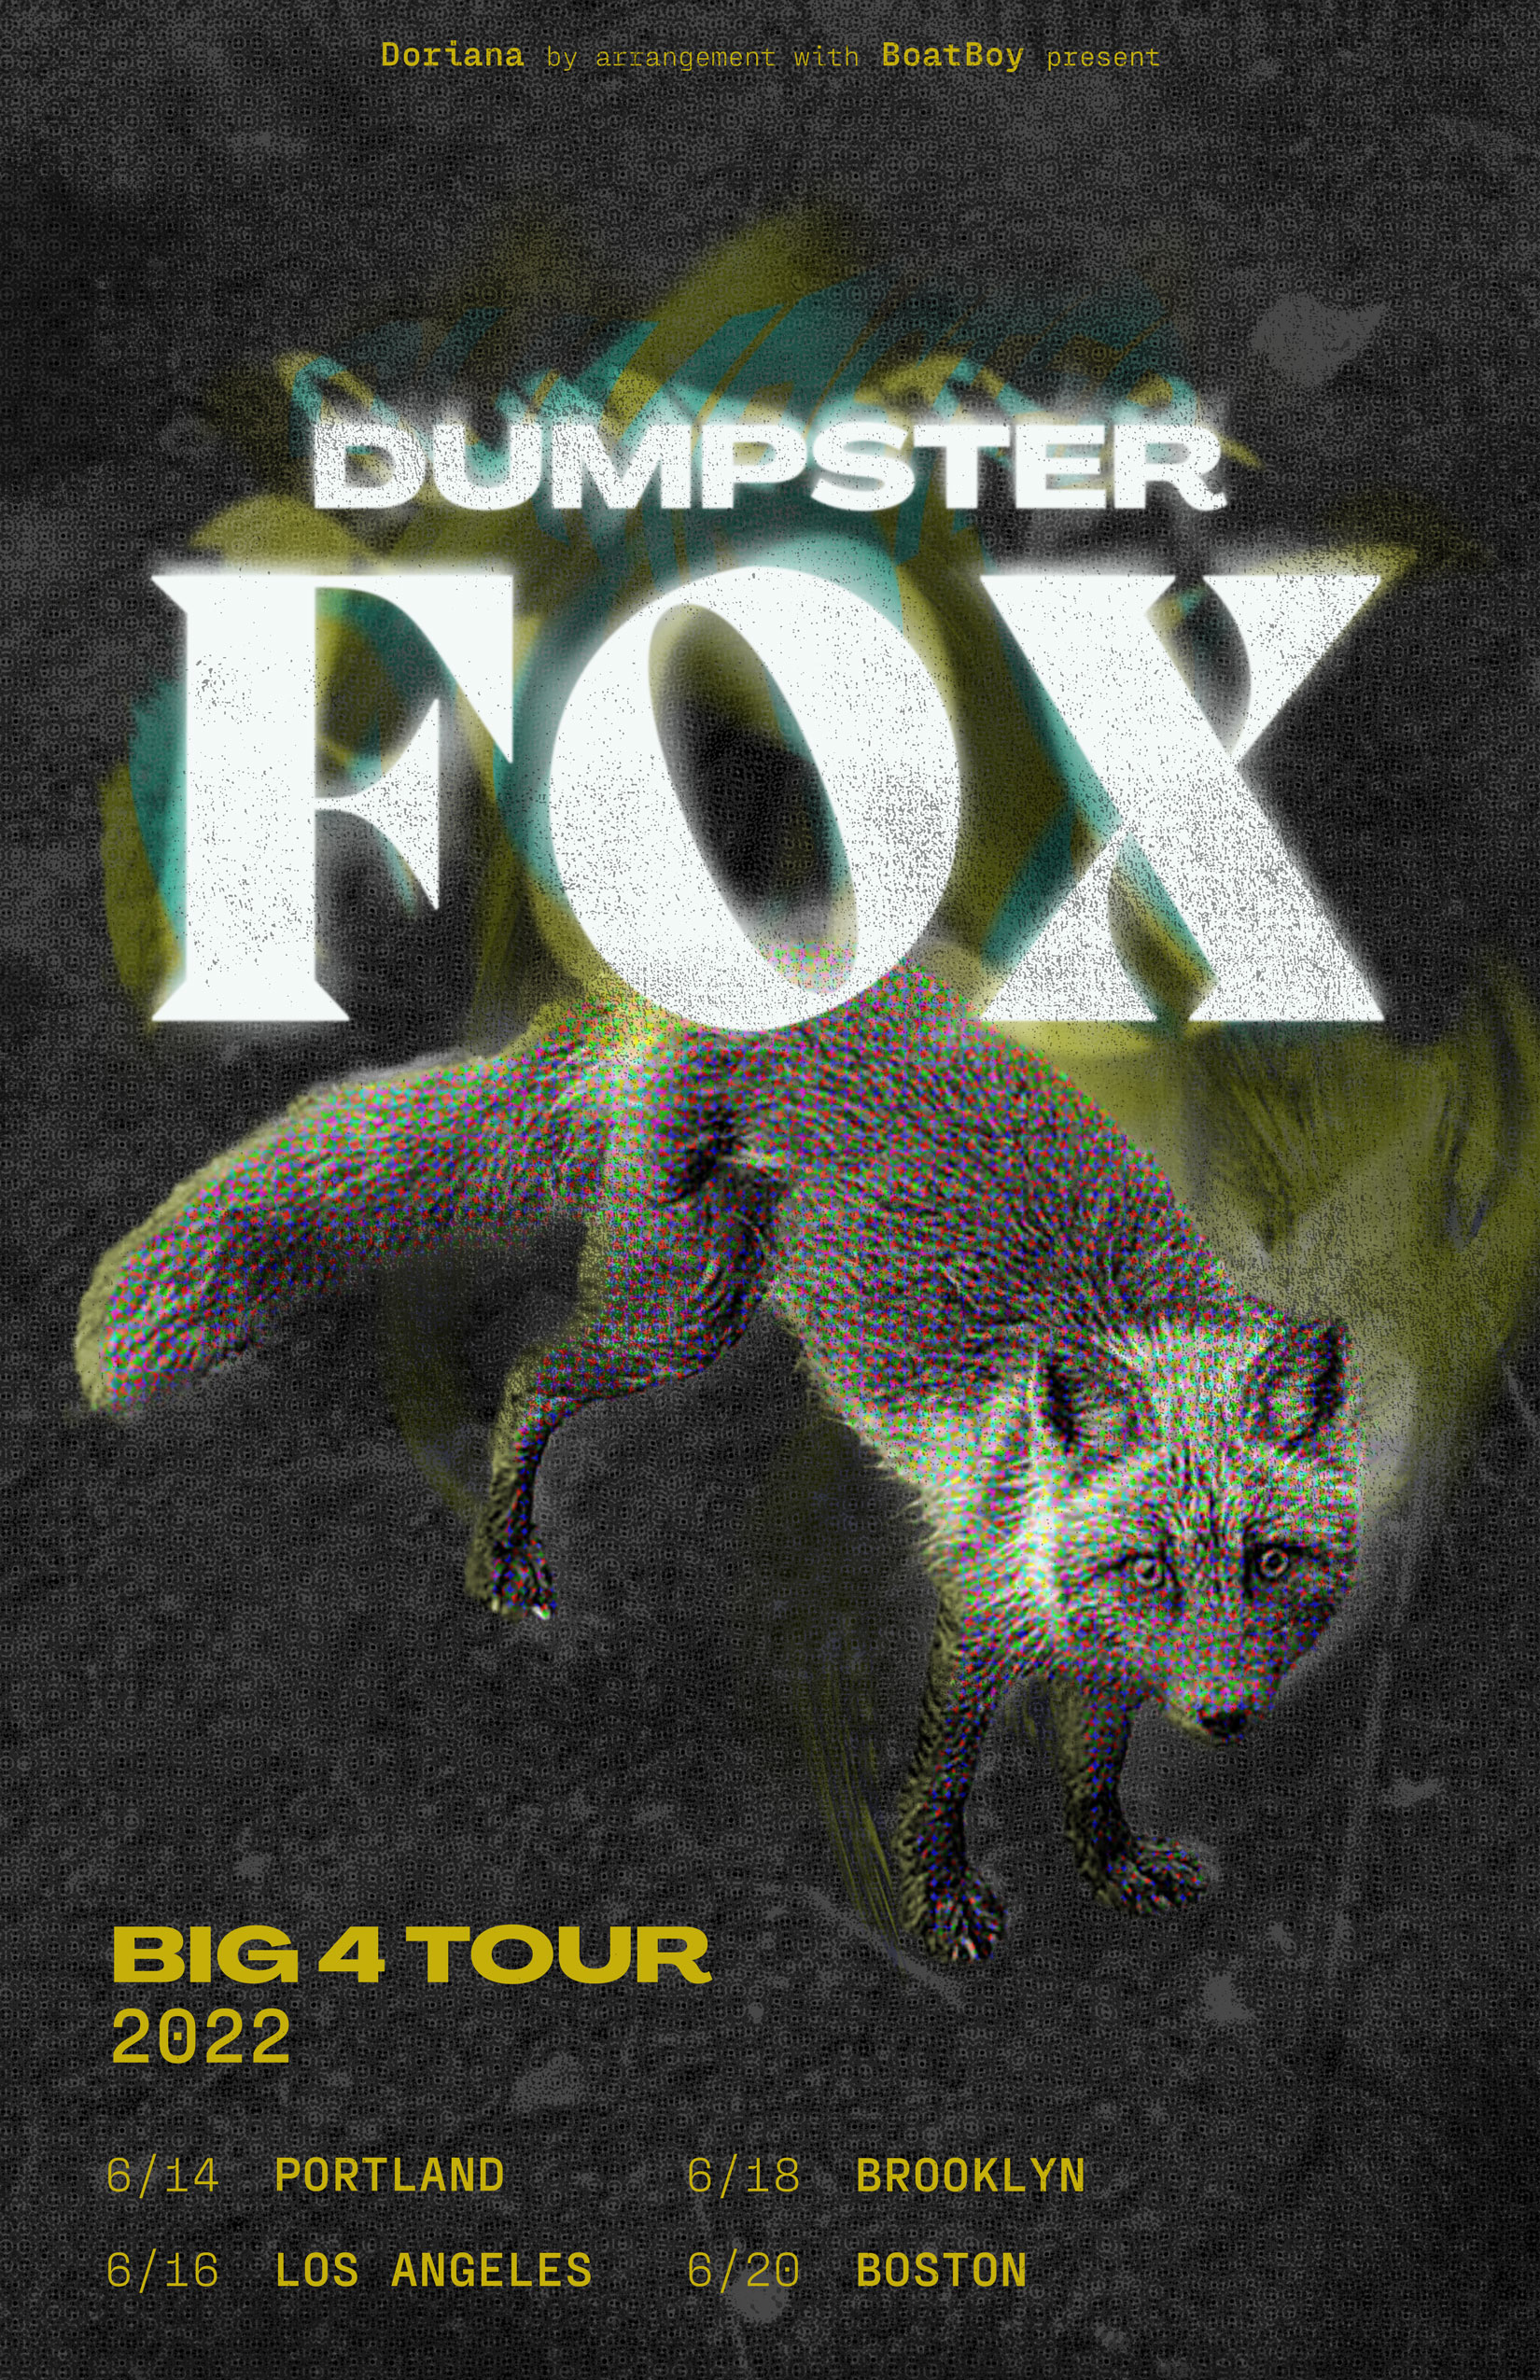 dumpster-fox-poster_darkgrey